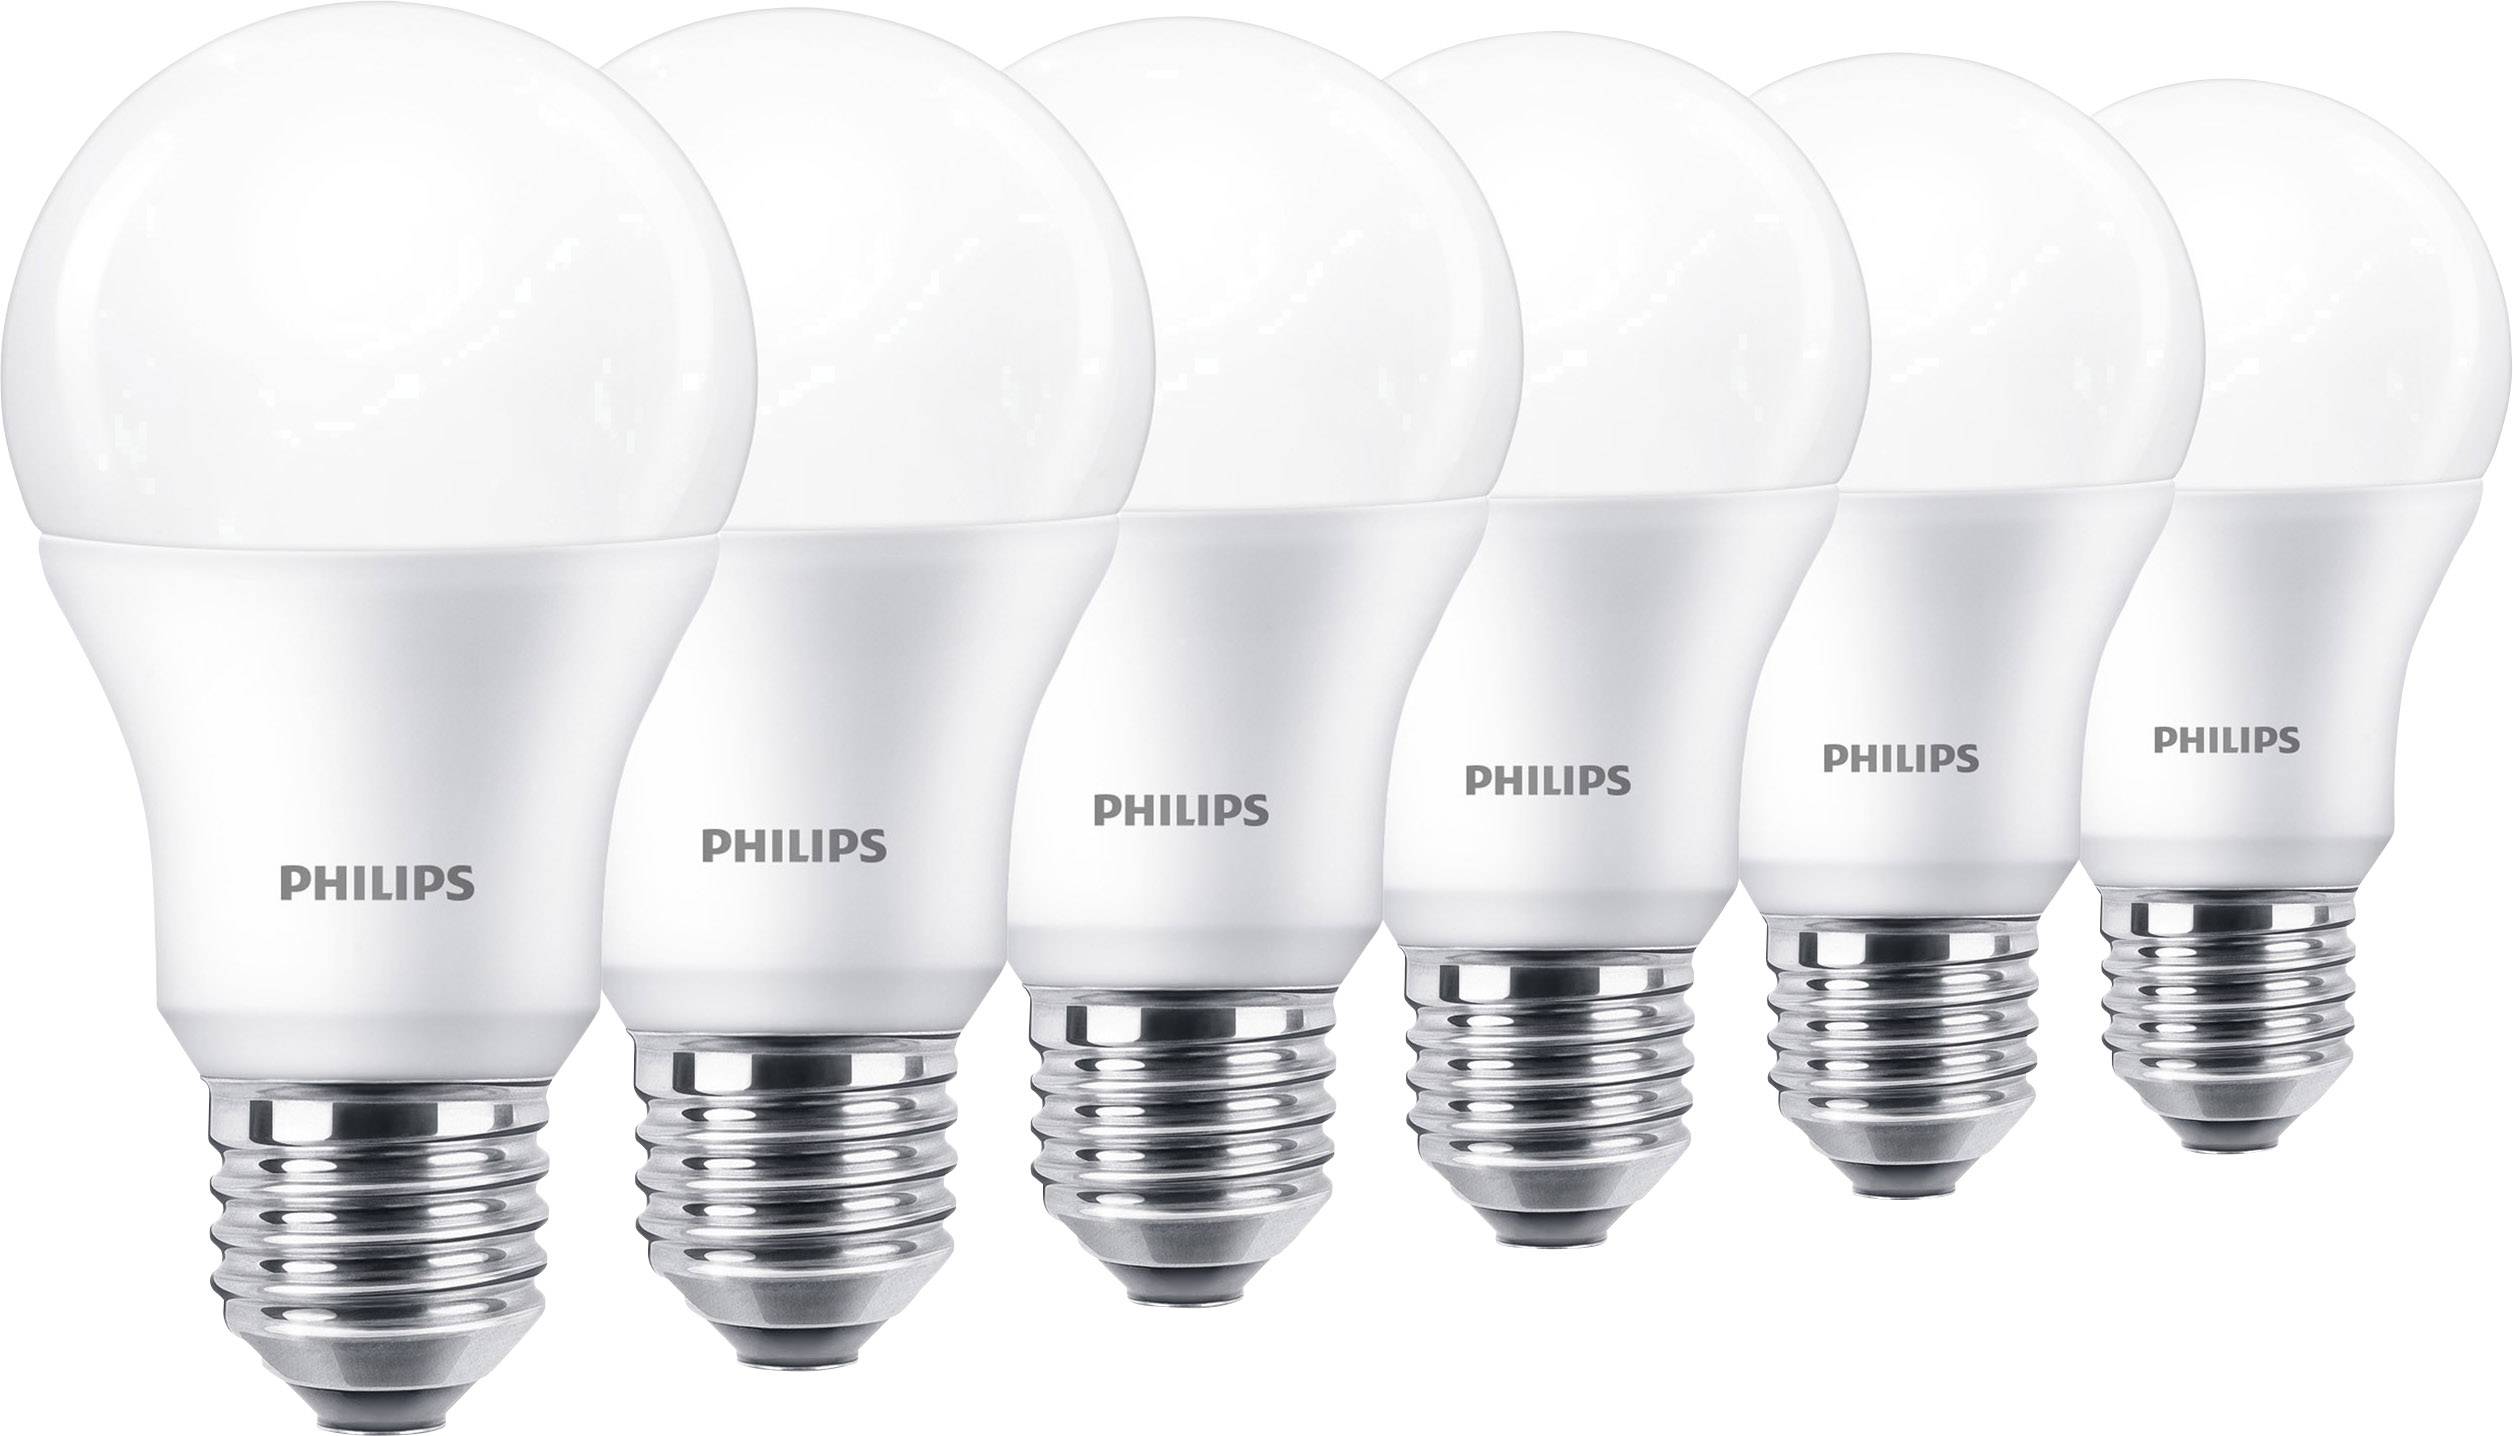 Светодиодные филипс купить. Лампа led LM-LBL 8w e27. 4) Лампа led w e27 Филипс. Led e14 Philips 4000 k. Лампа светодиодная led Bulb 10w e27 6500k HV 1pf/20 GMGC.